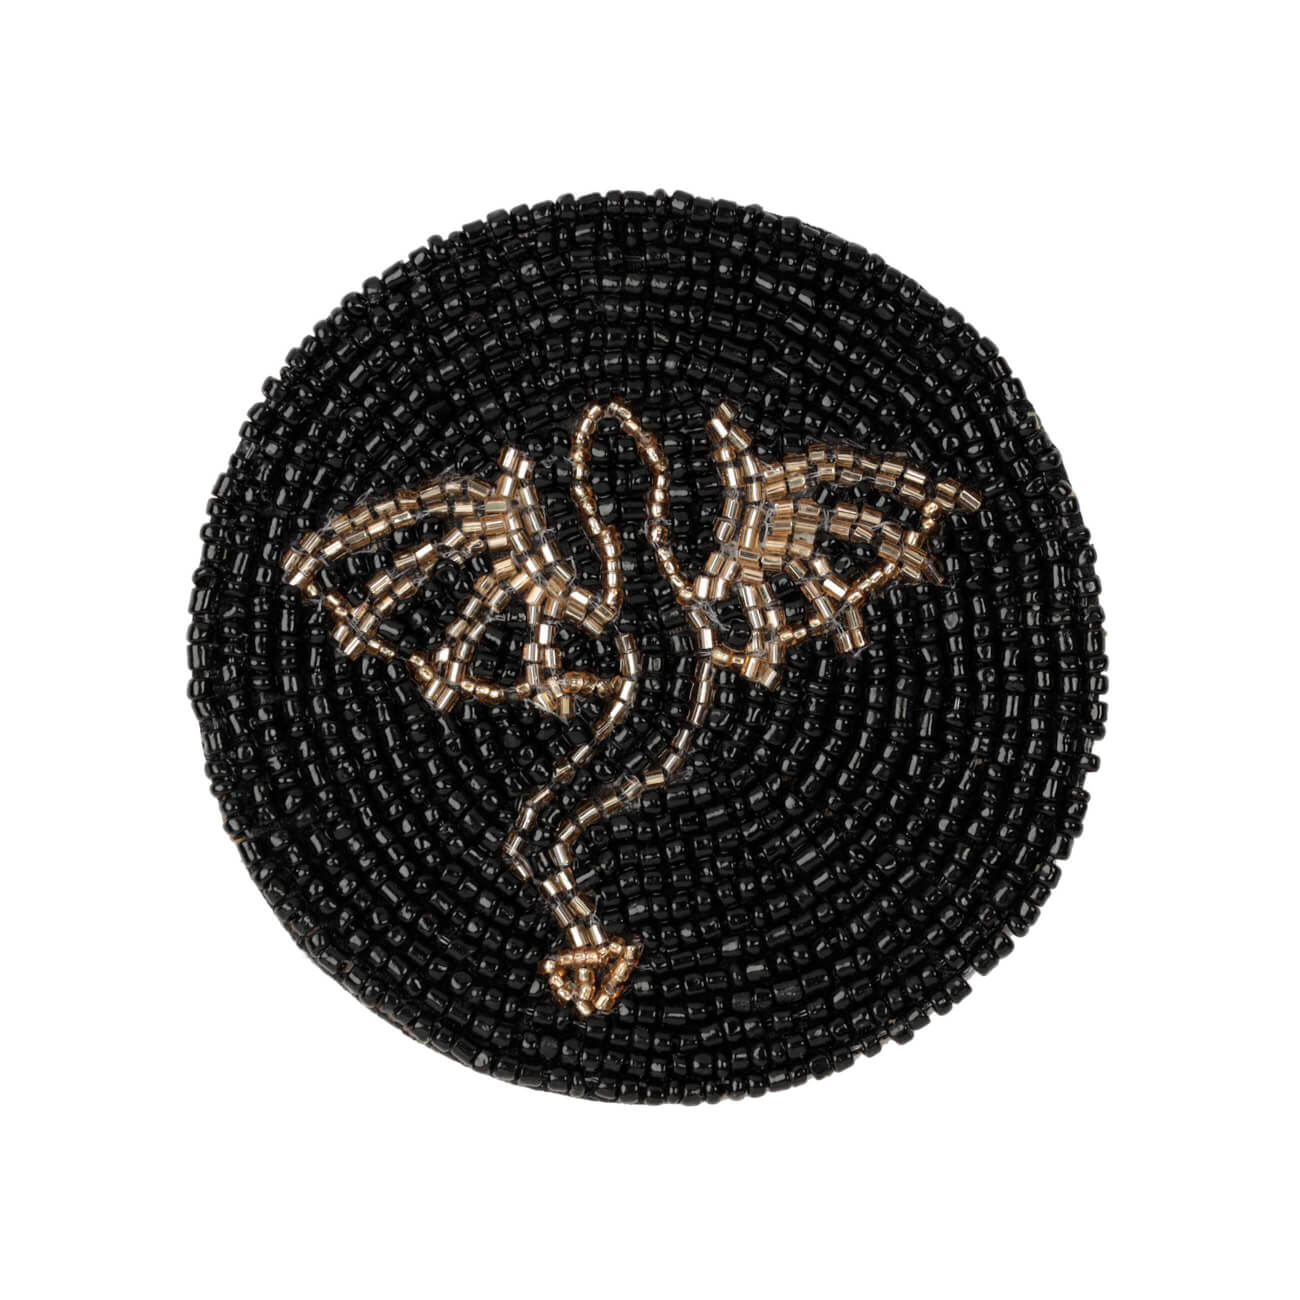 Подставка под кружку, 10 см, бисер, круглая, черная, Дракон, Art beads подставка для зонтов биг бен черная 24х24х56см